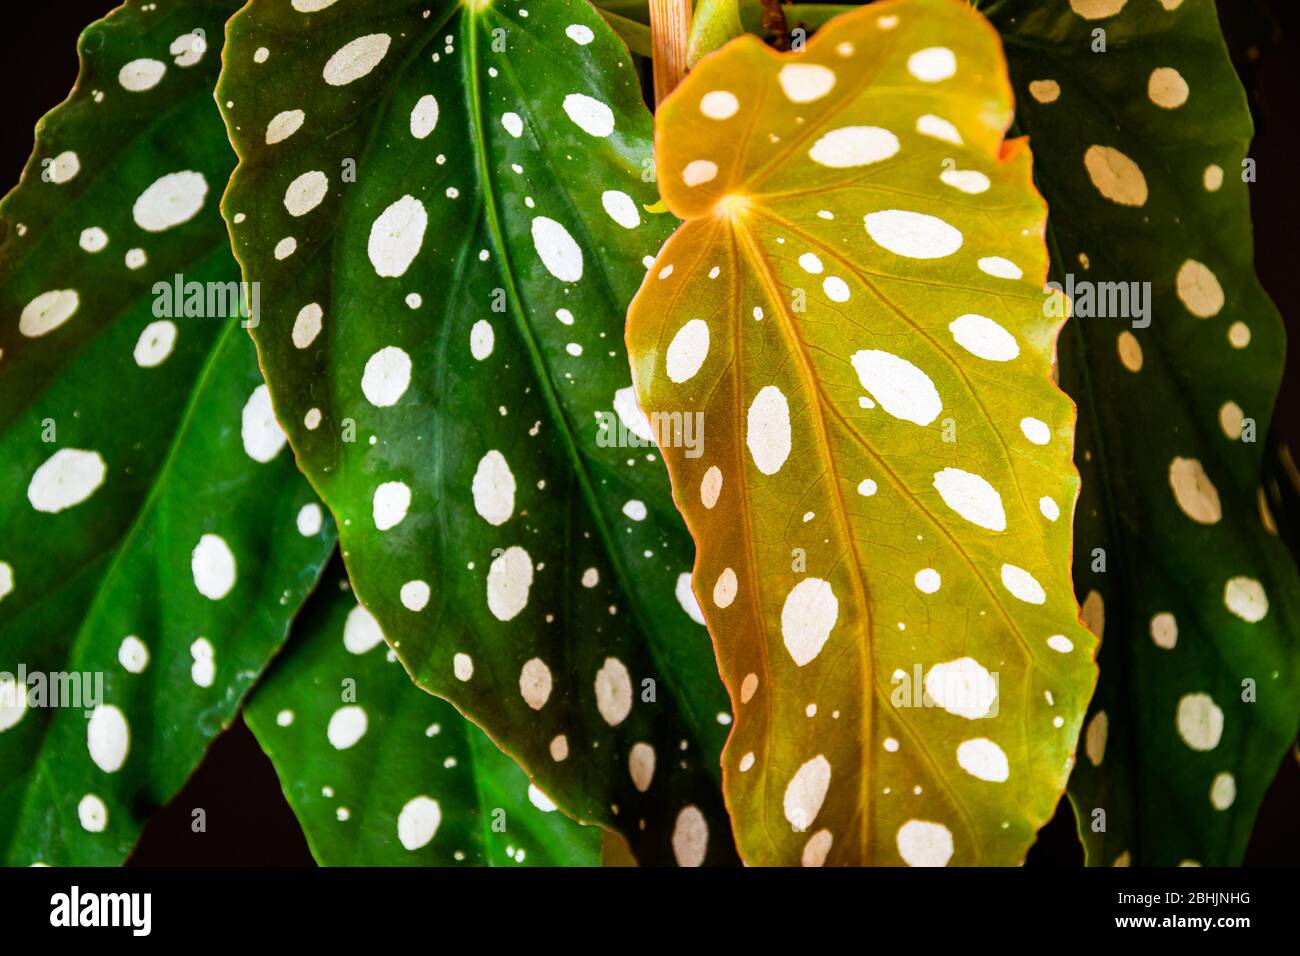 Nahaufnahme der polka-dot gemusterten Blätter der polka-dot begonia (begonia maculata var. Wightii) Zimmerpflanze. Einzigartiges Zimmerpflanzen Detail. Stockfoto